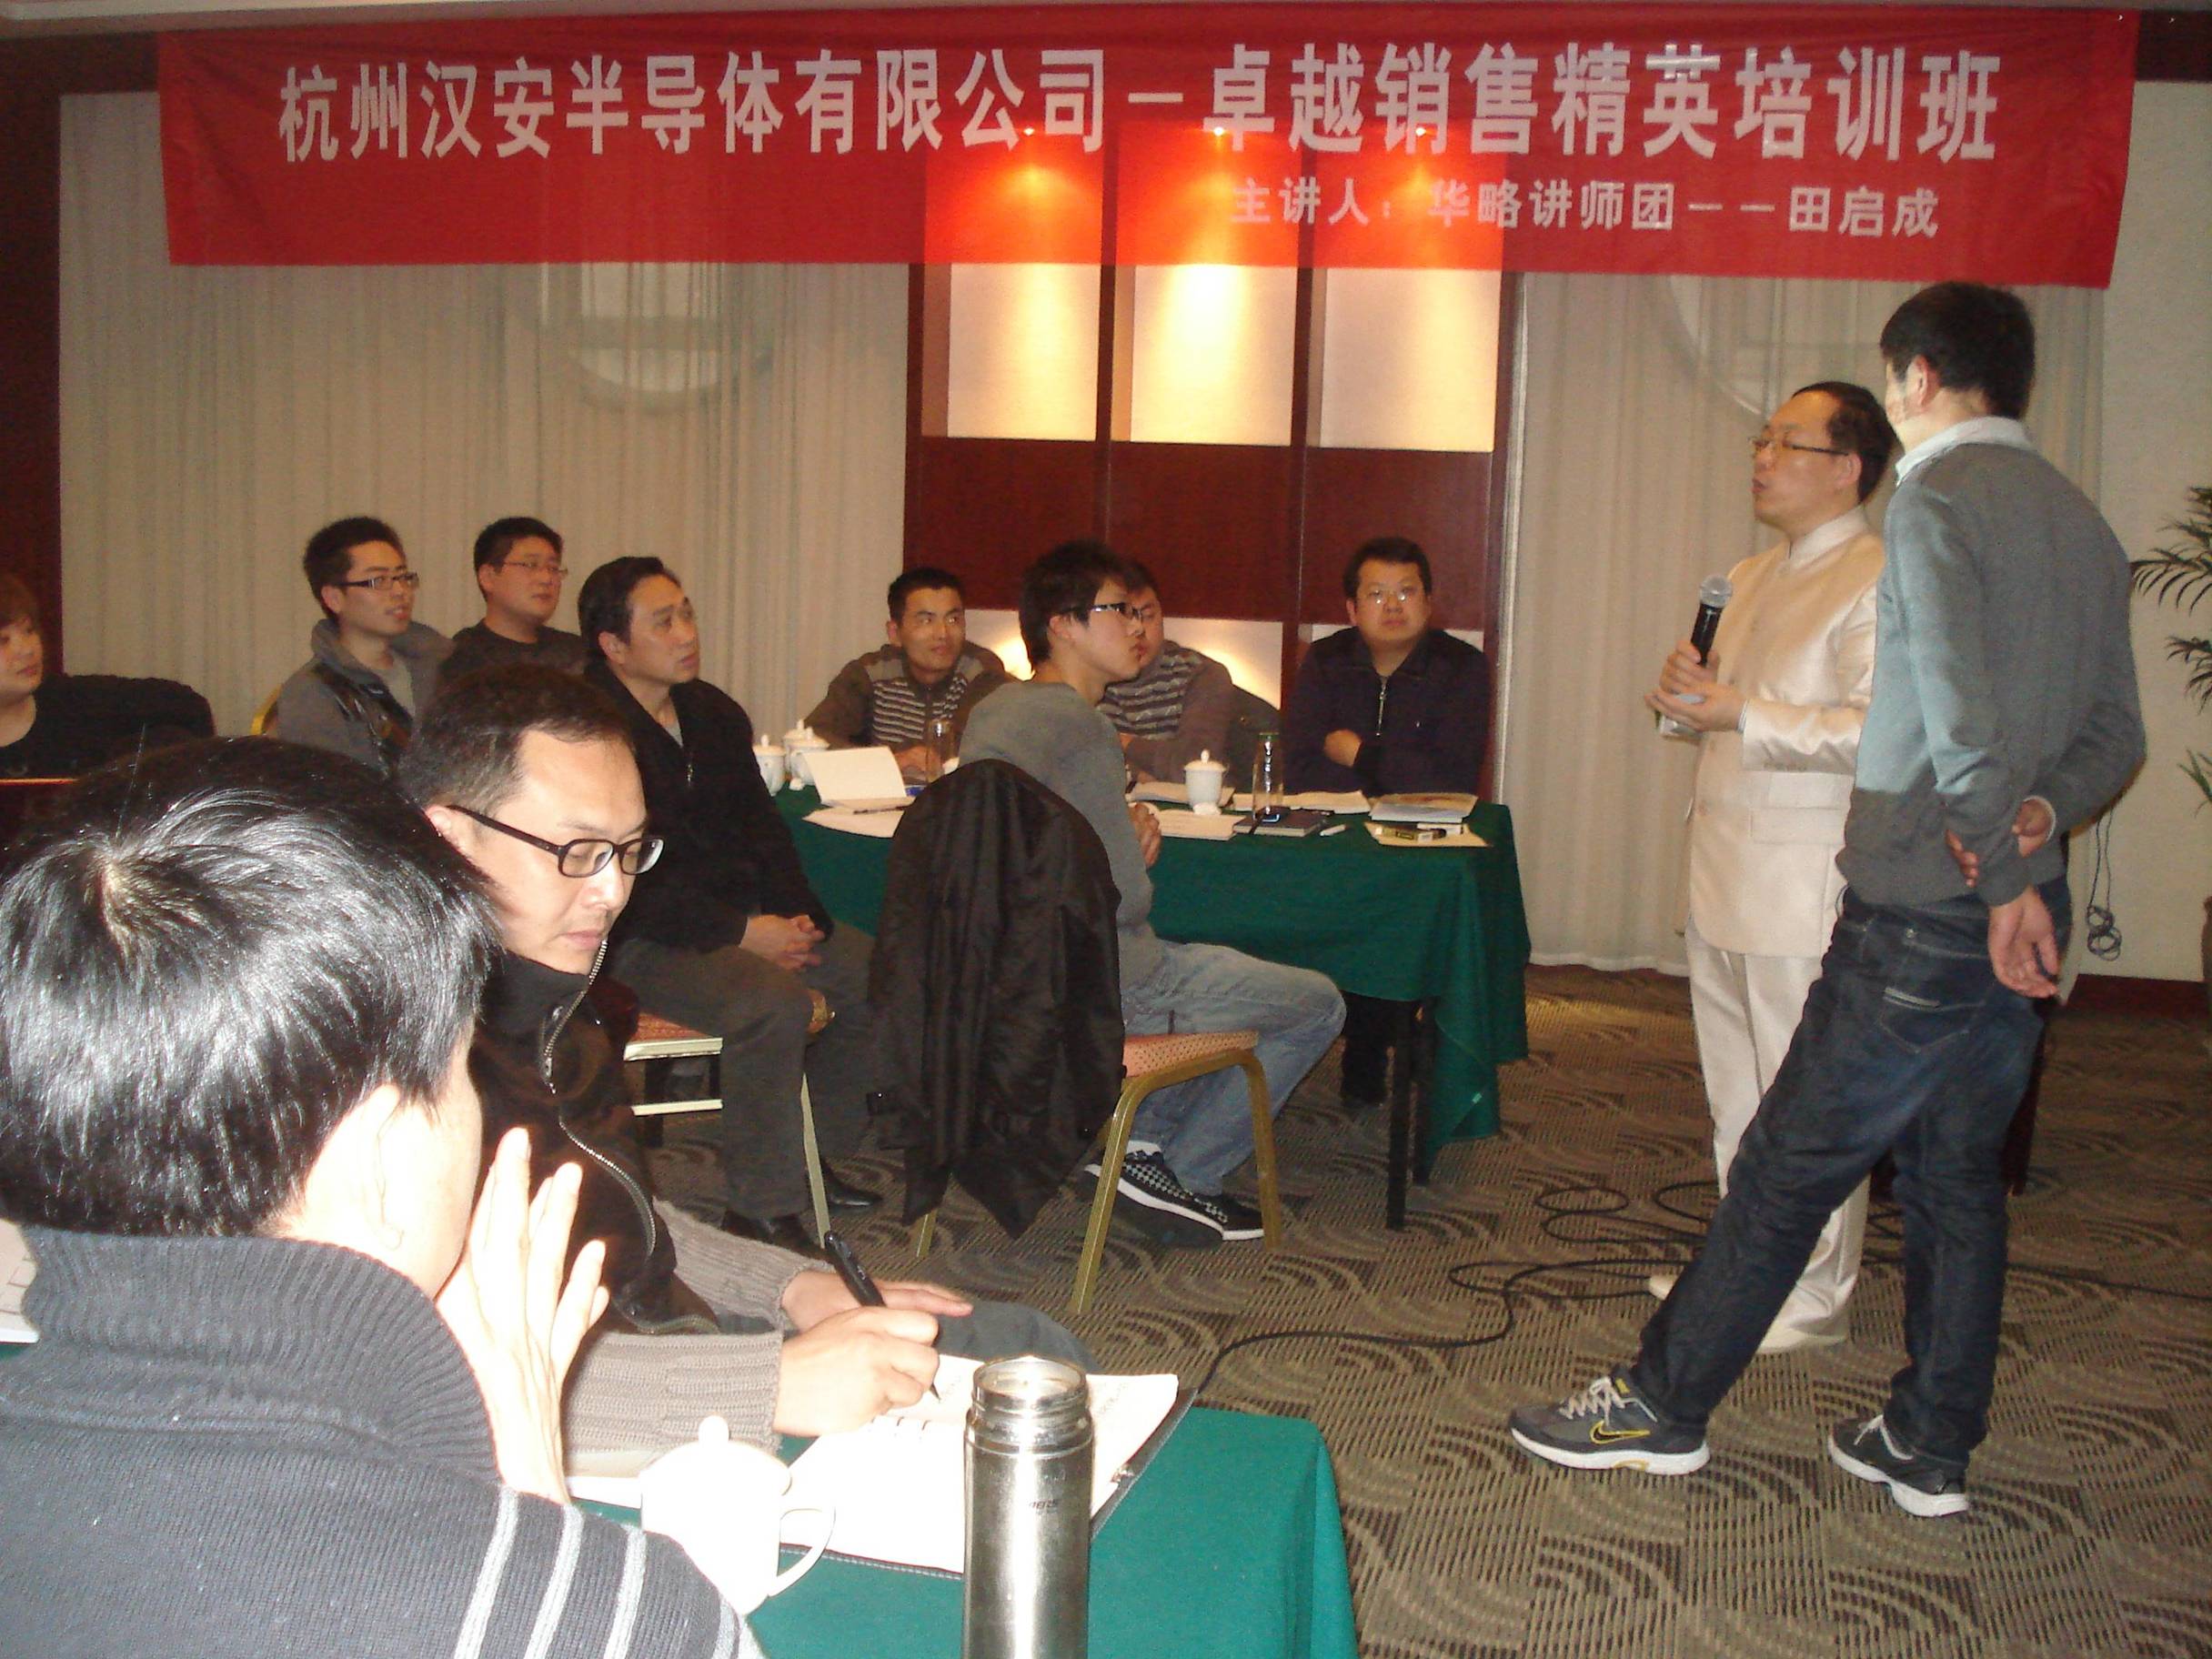 杭州汉安半导体有限公司讲授《销售技巧与礼仪》课程